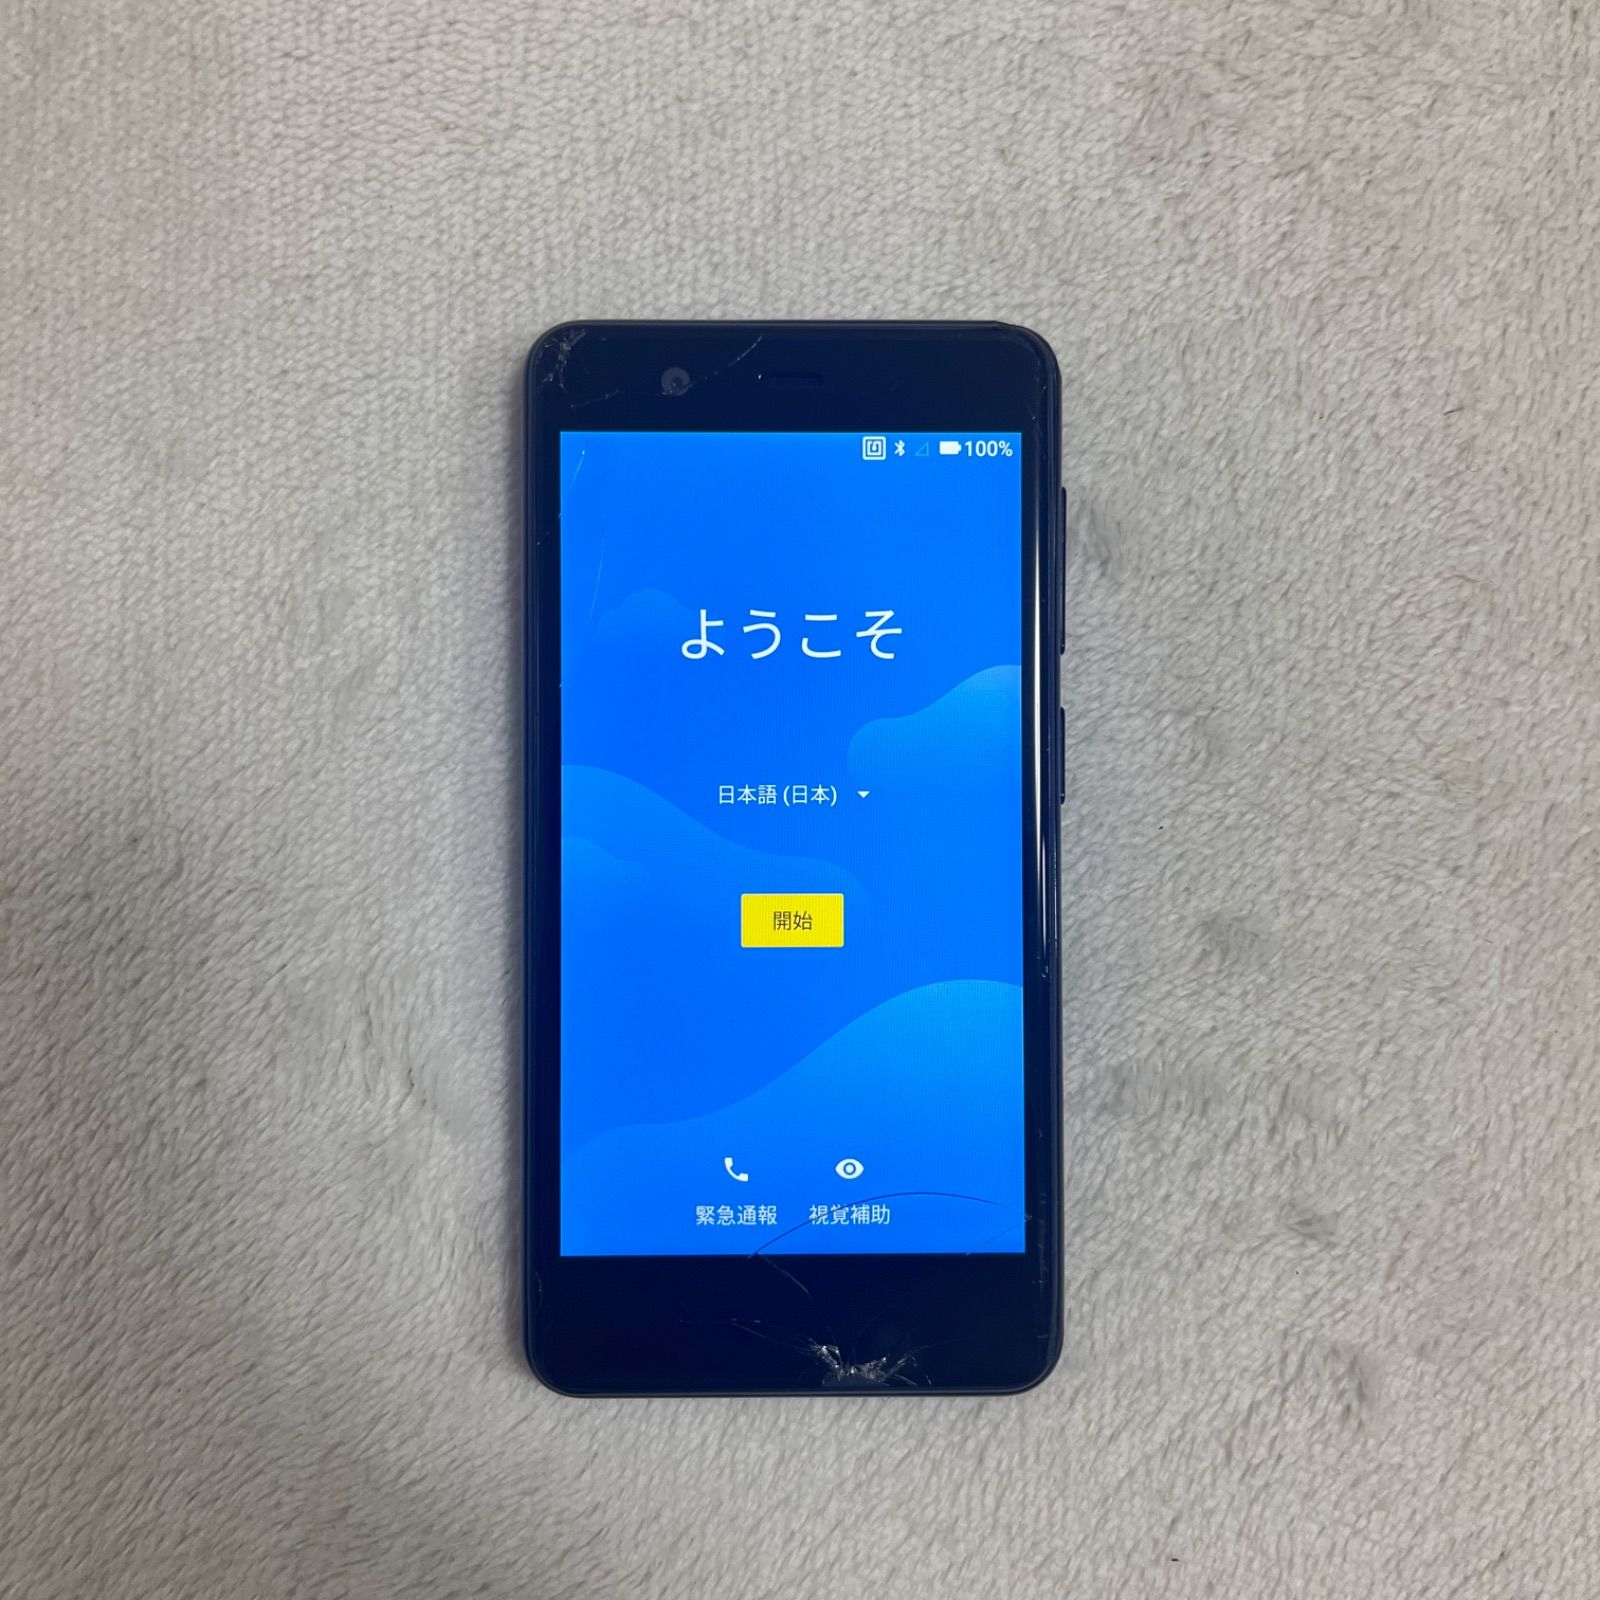 C330 楽天mini ブラック スマートフォン - processショップス - メルカリ